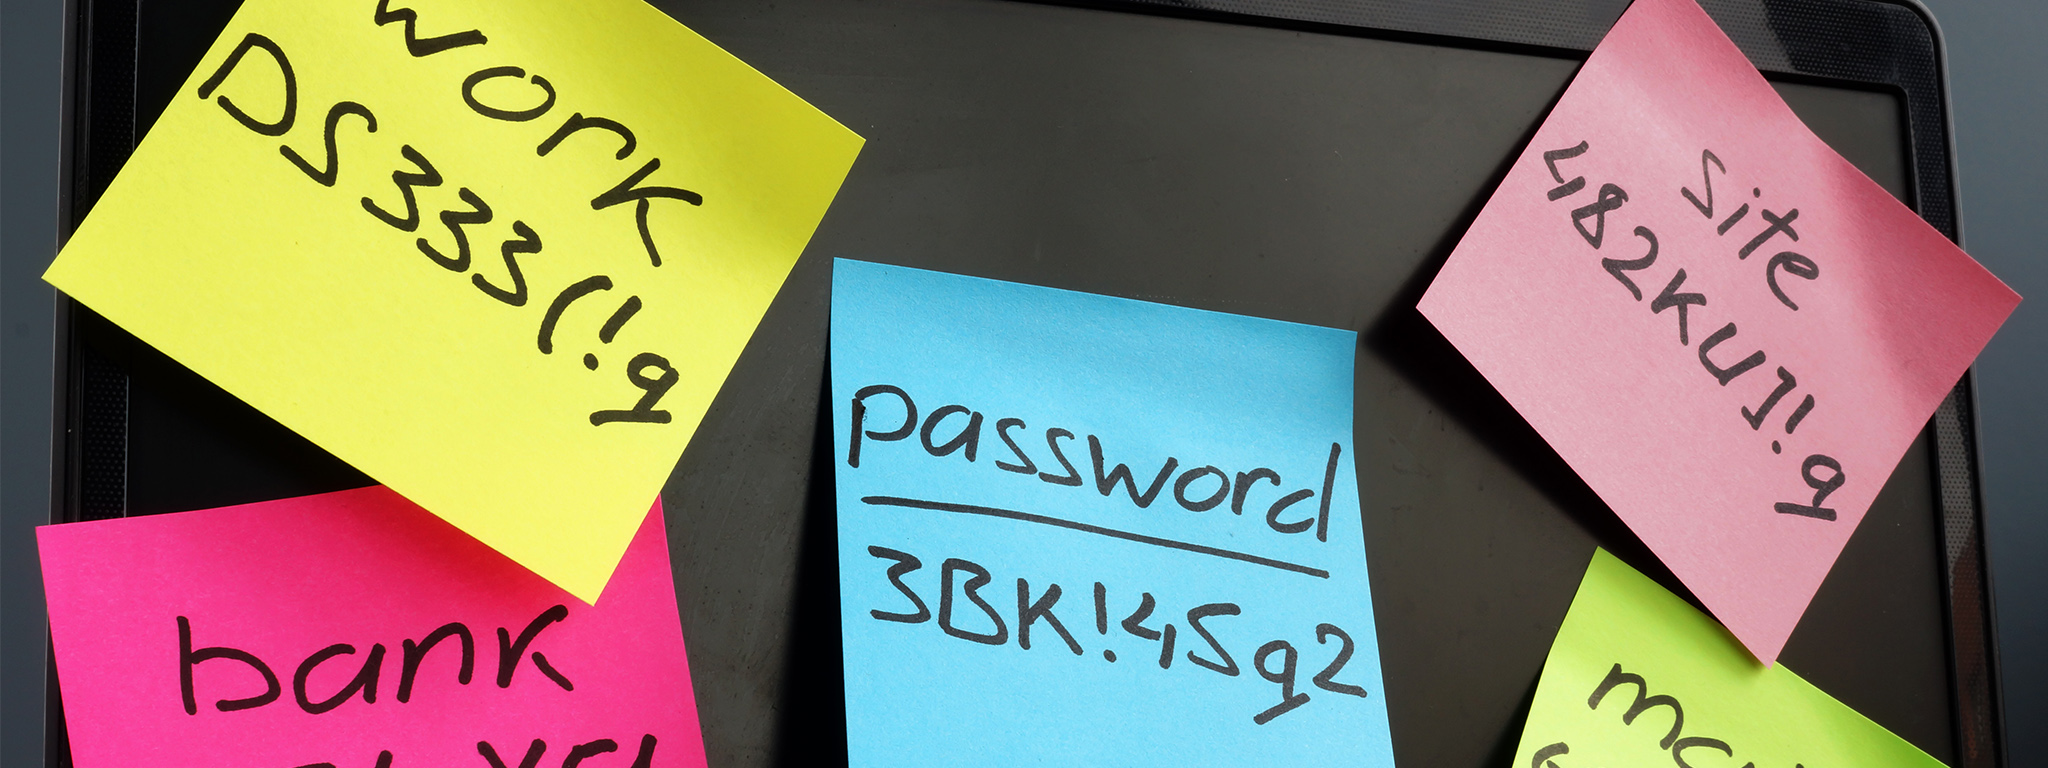 Управление паролями. Ноутбук с наклеенными на экран записками со сложными паролями.